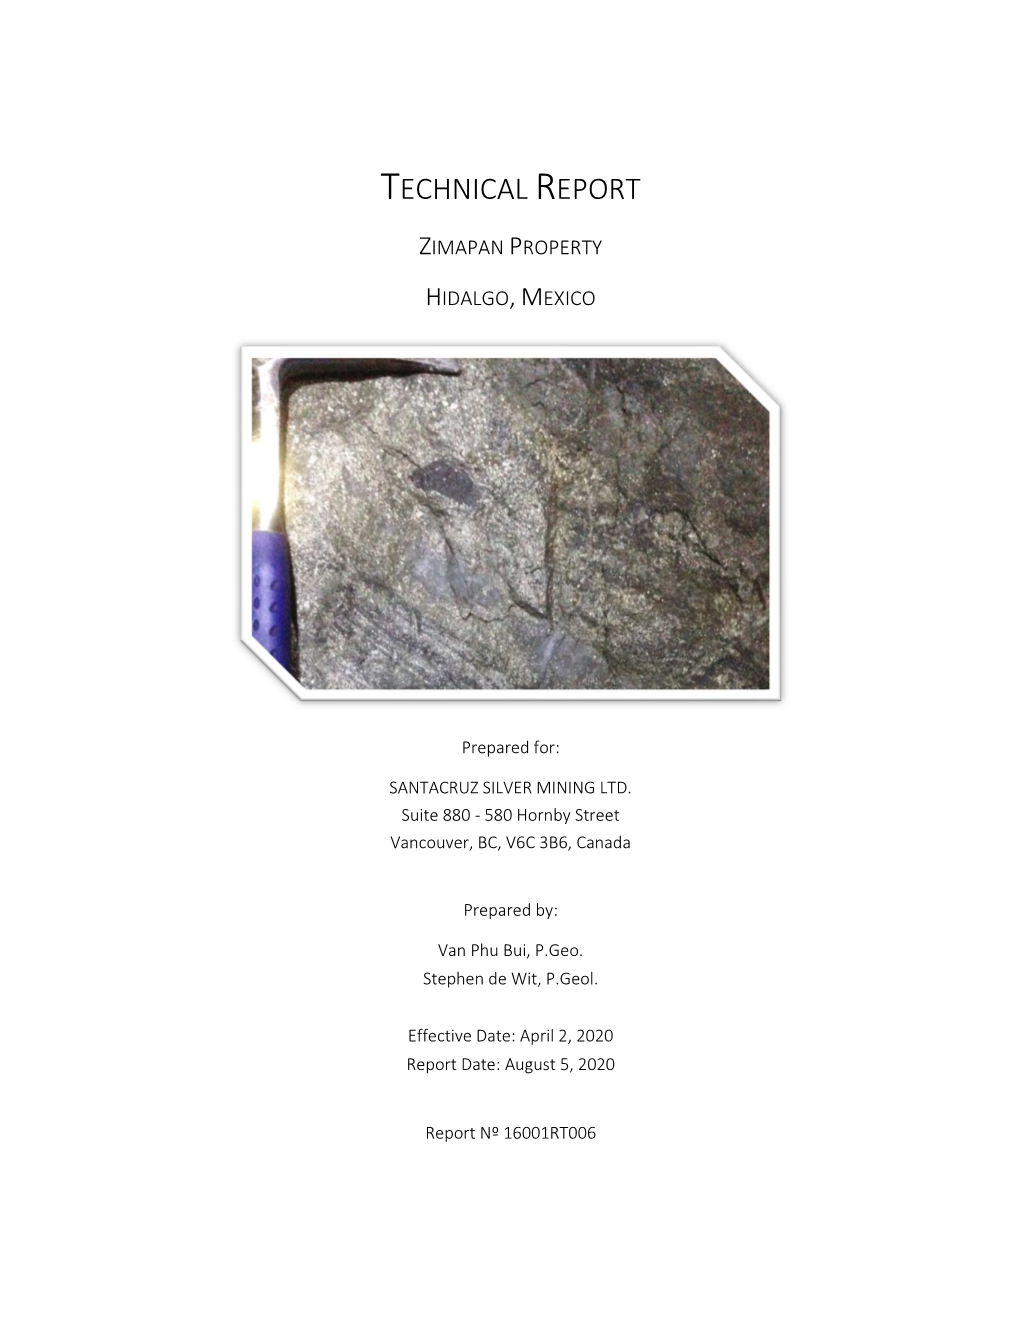 Technical Report, Zimapan Property, Hidalgo, Mexico